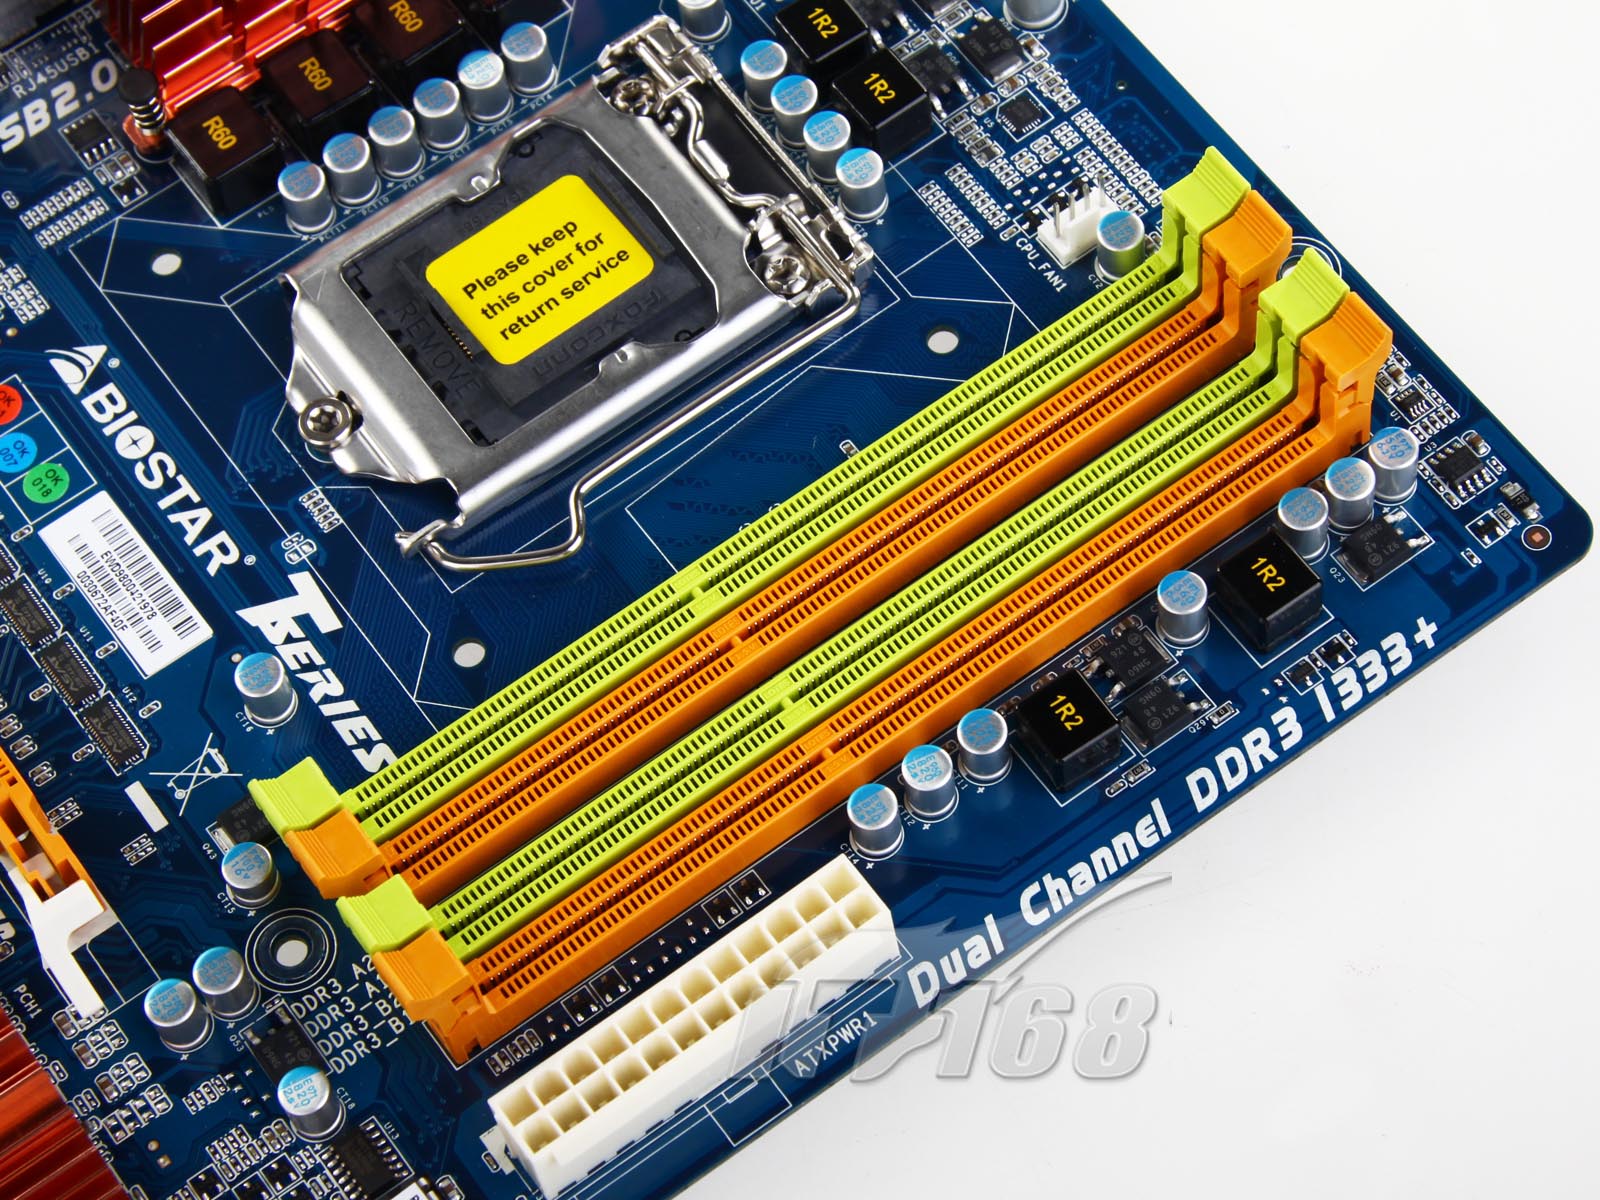 P45 主板搭配 DDR3 内存：提升计算机运行速度的黄金组合  第4张